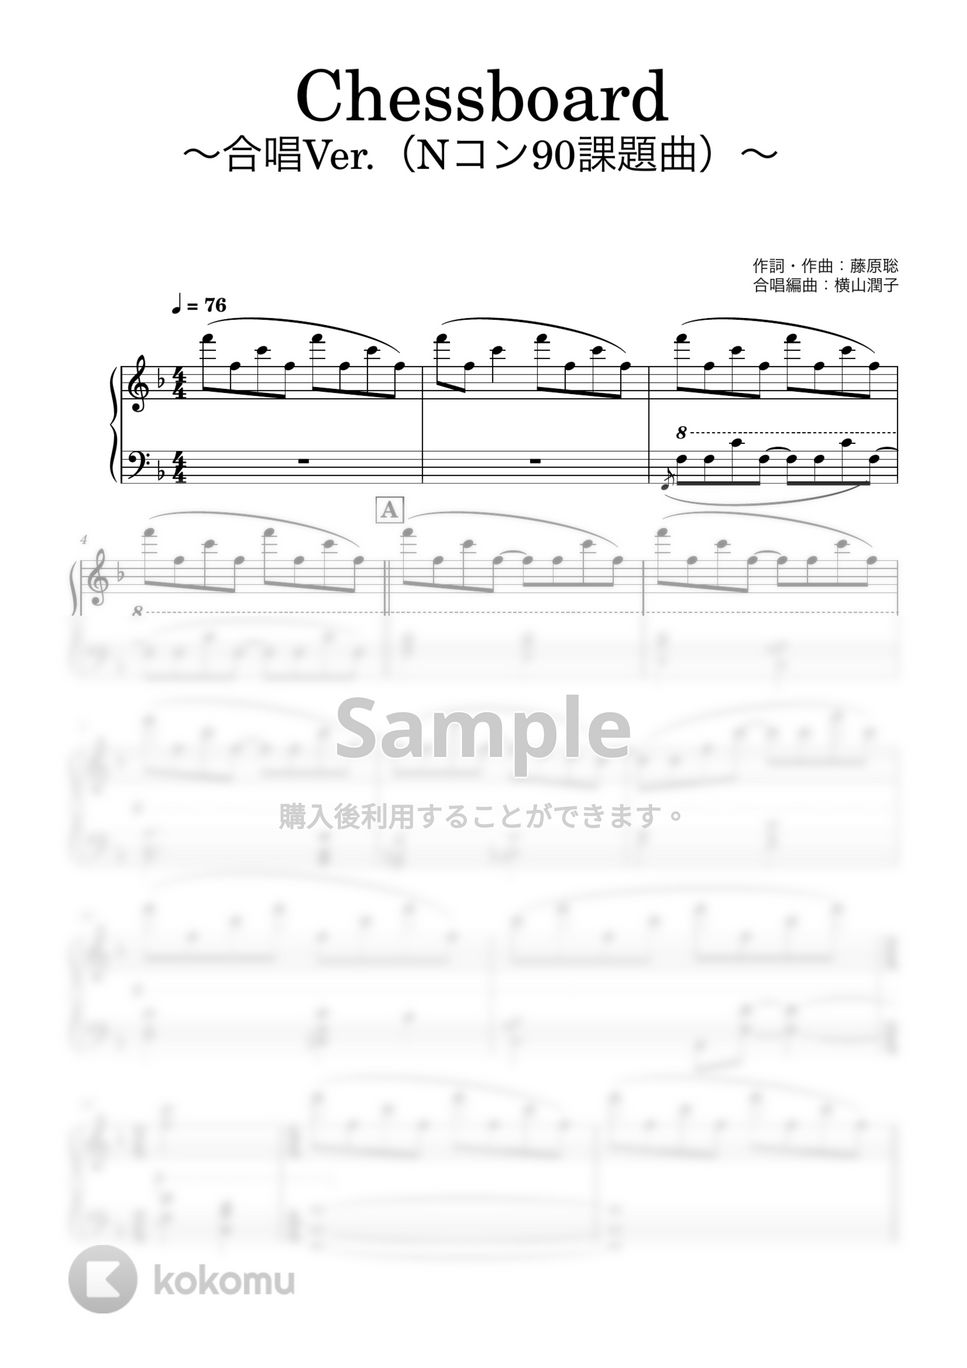 藤原聡 - Chessboard (ピアノ伴奏) by やまといぶの伴奏